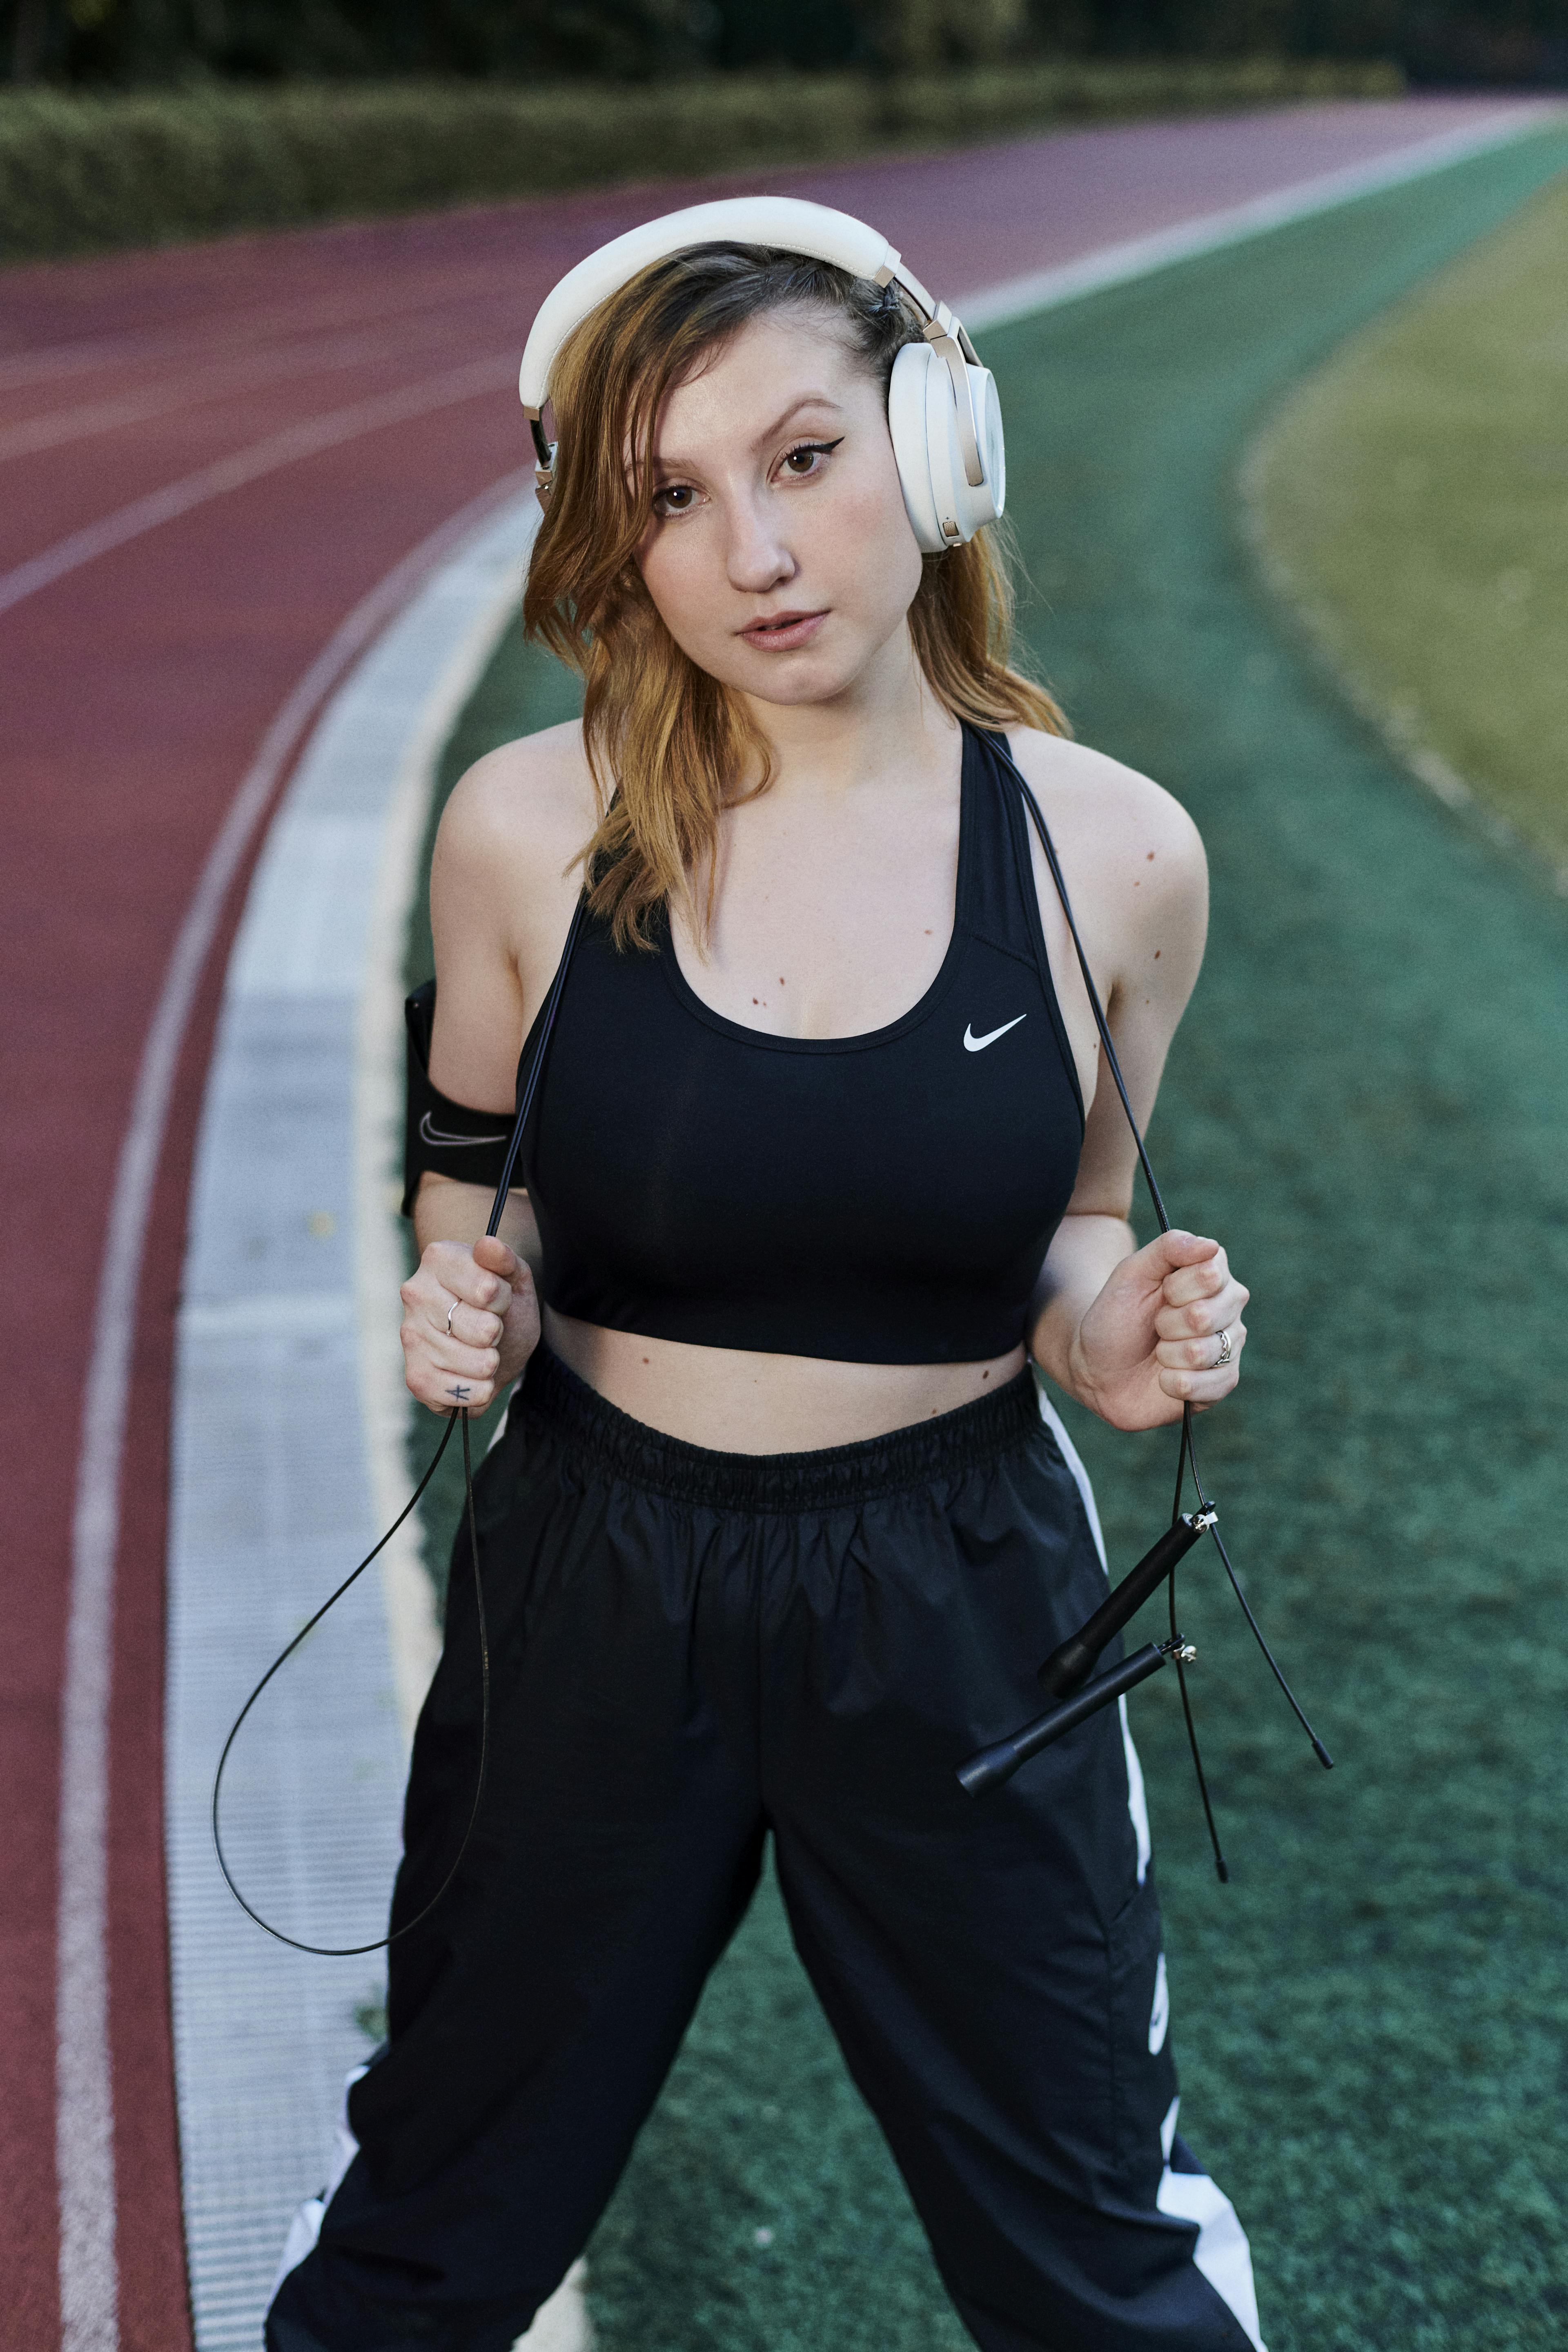 Nike - Background